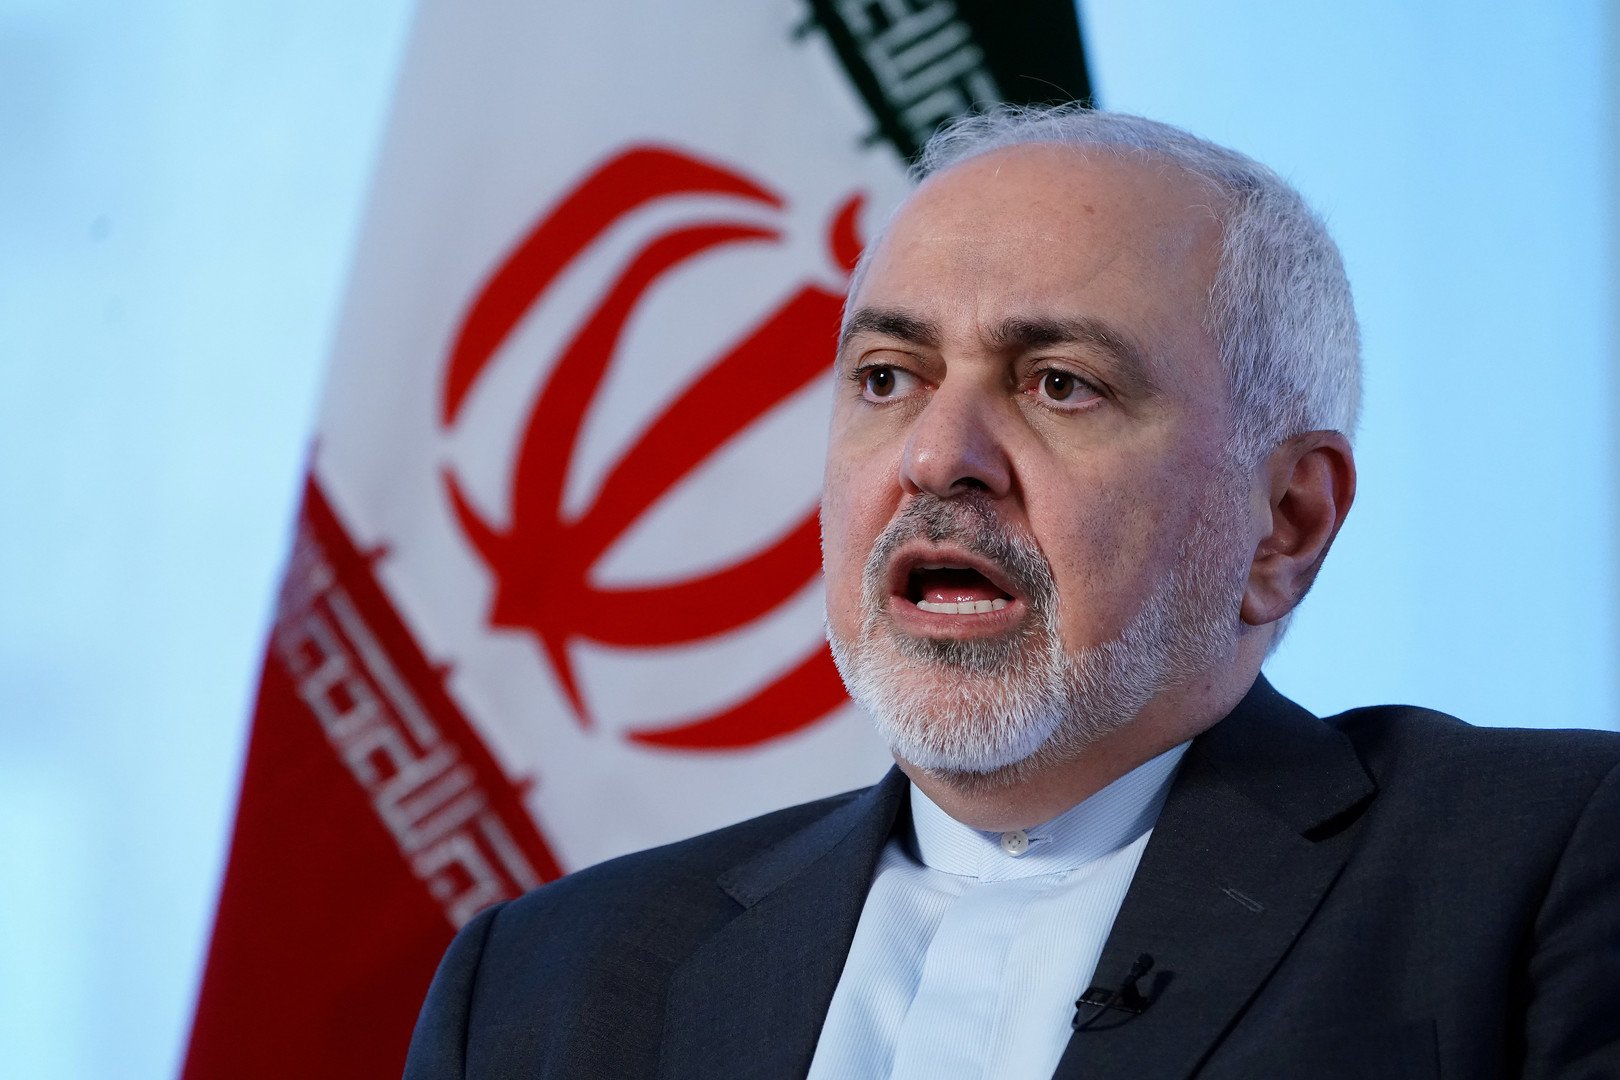 ظريف: الإرهاب الاقتصادي والتهديد بالإبادة لن يقضيا على إيران